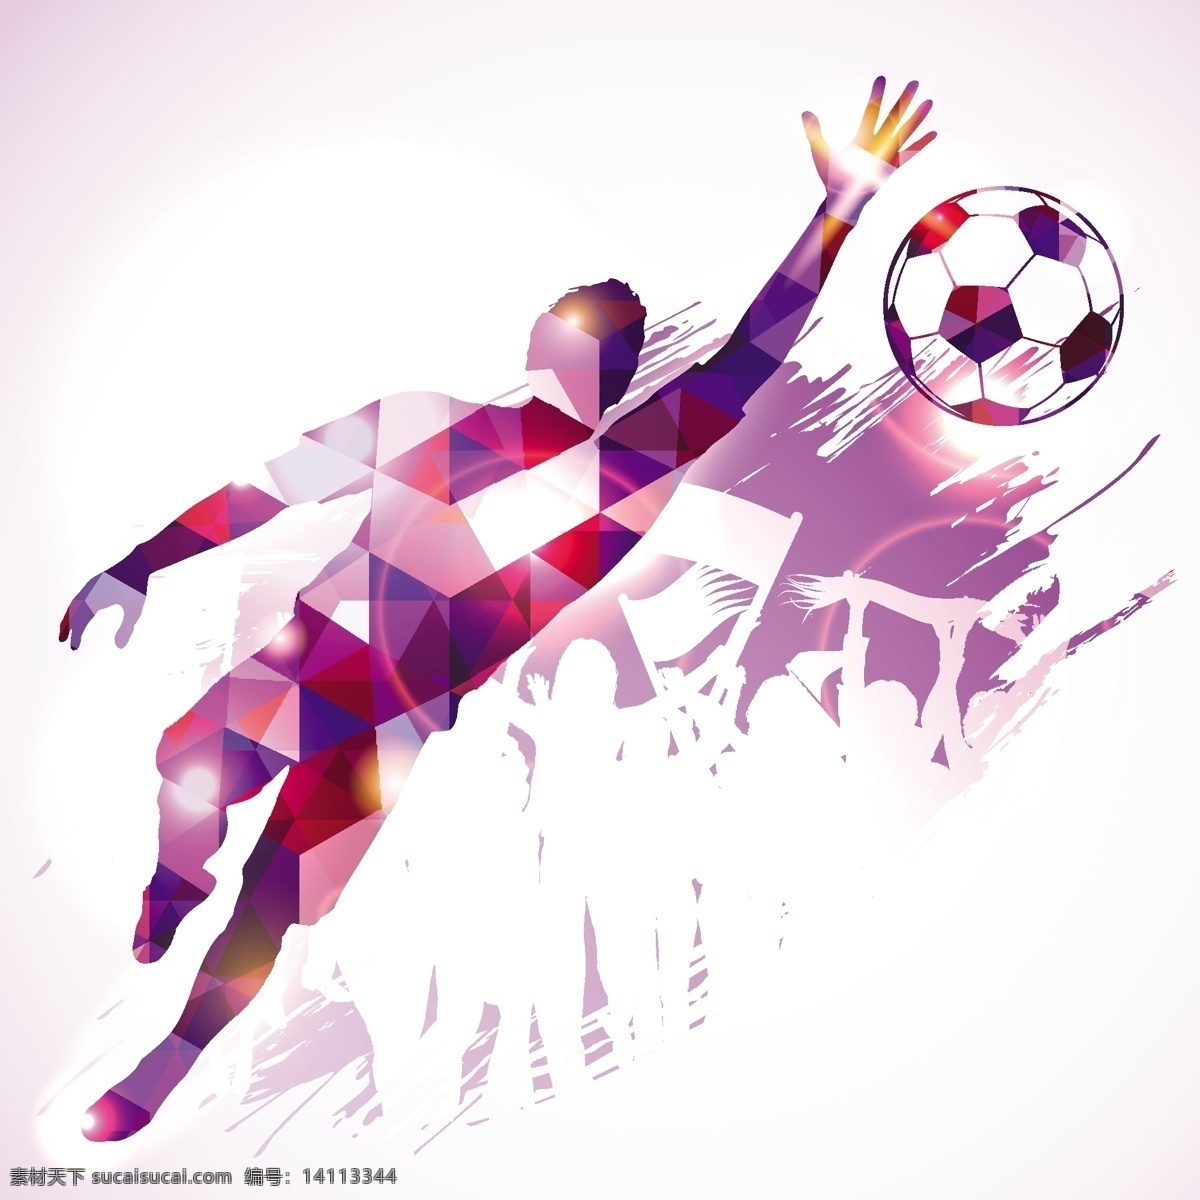 足球运动员 足球 运动员 剪影 踢球 踢足球 欧洲杯 世界杯 白色